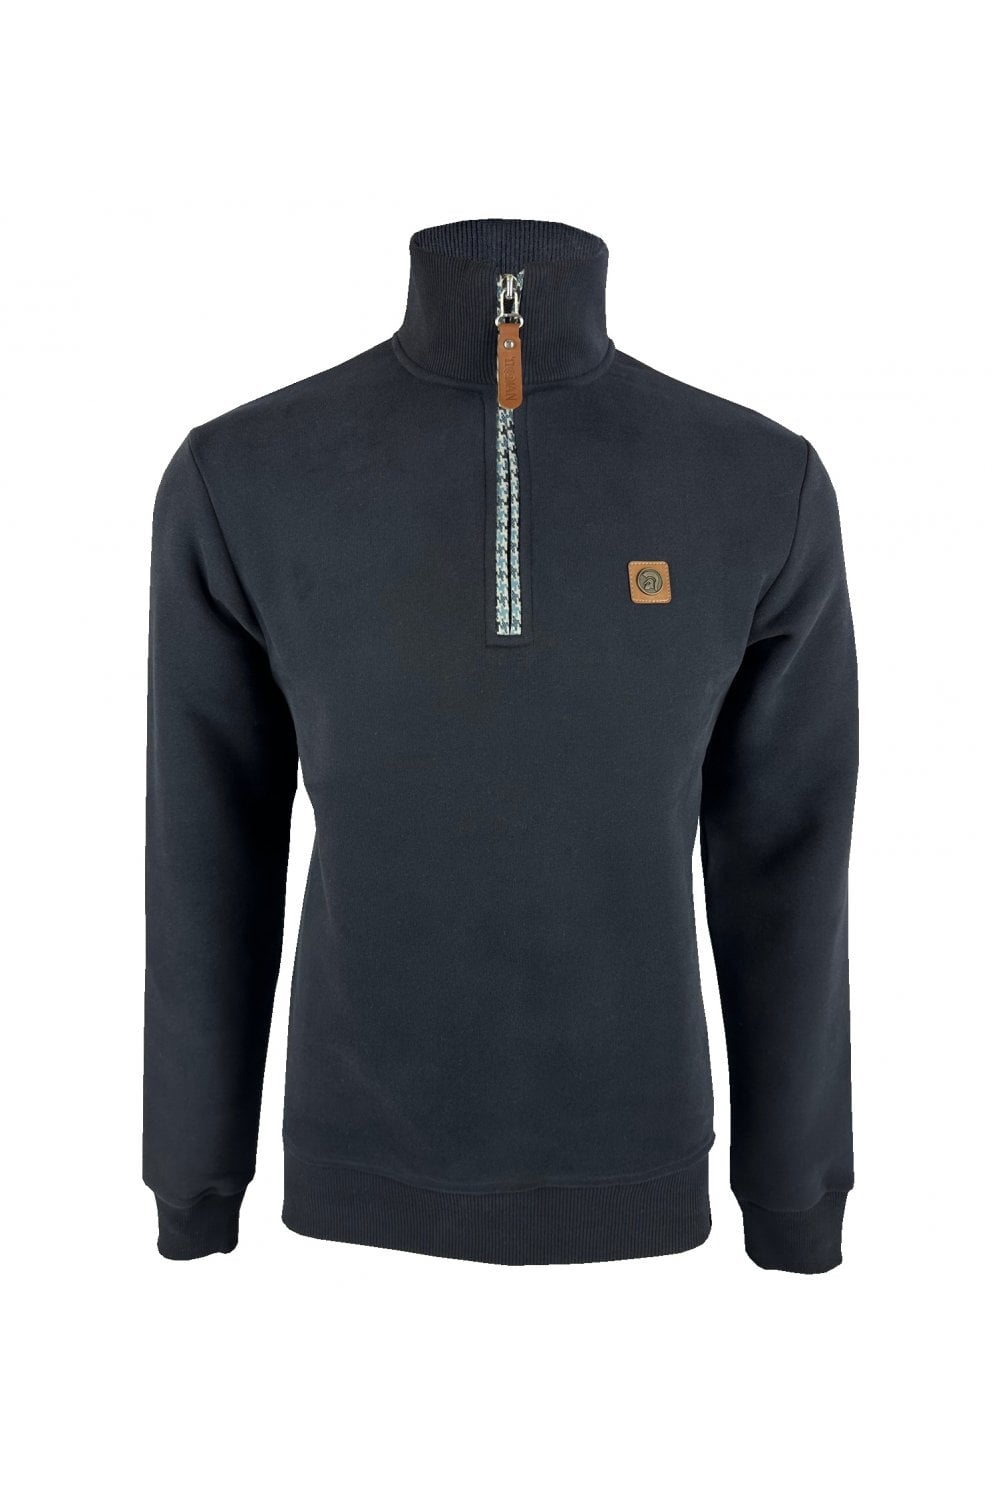 TROJAN Houndstooth Trim 1/4 Zip Sweater TR/8805 Navy - Raw Menswear